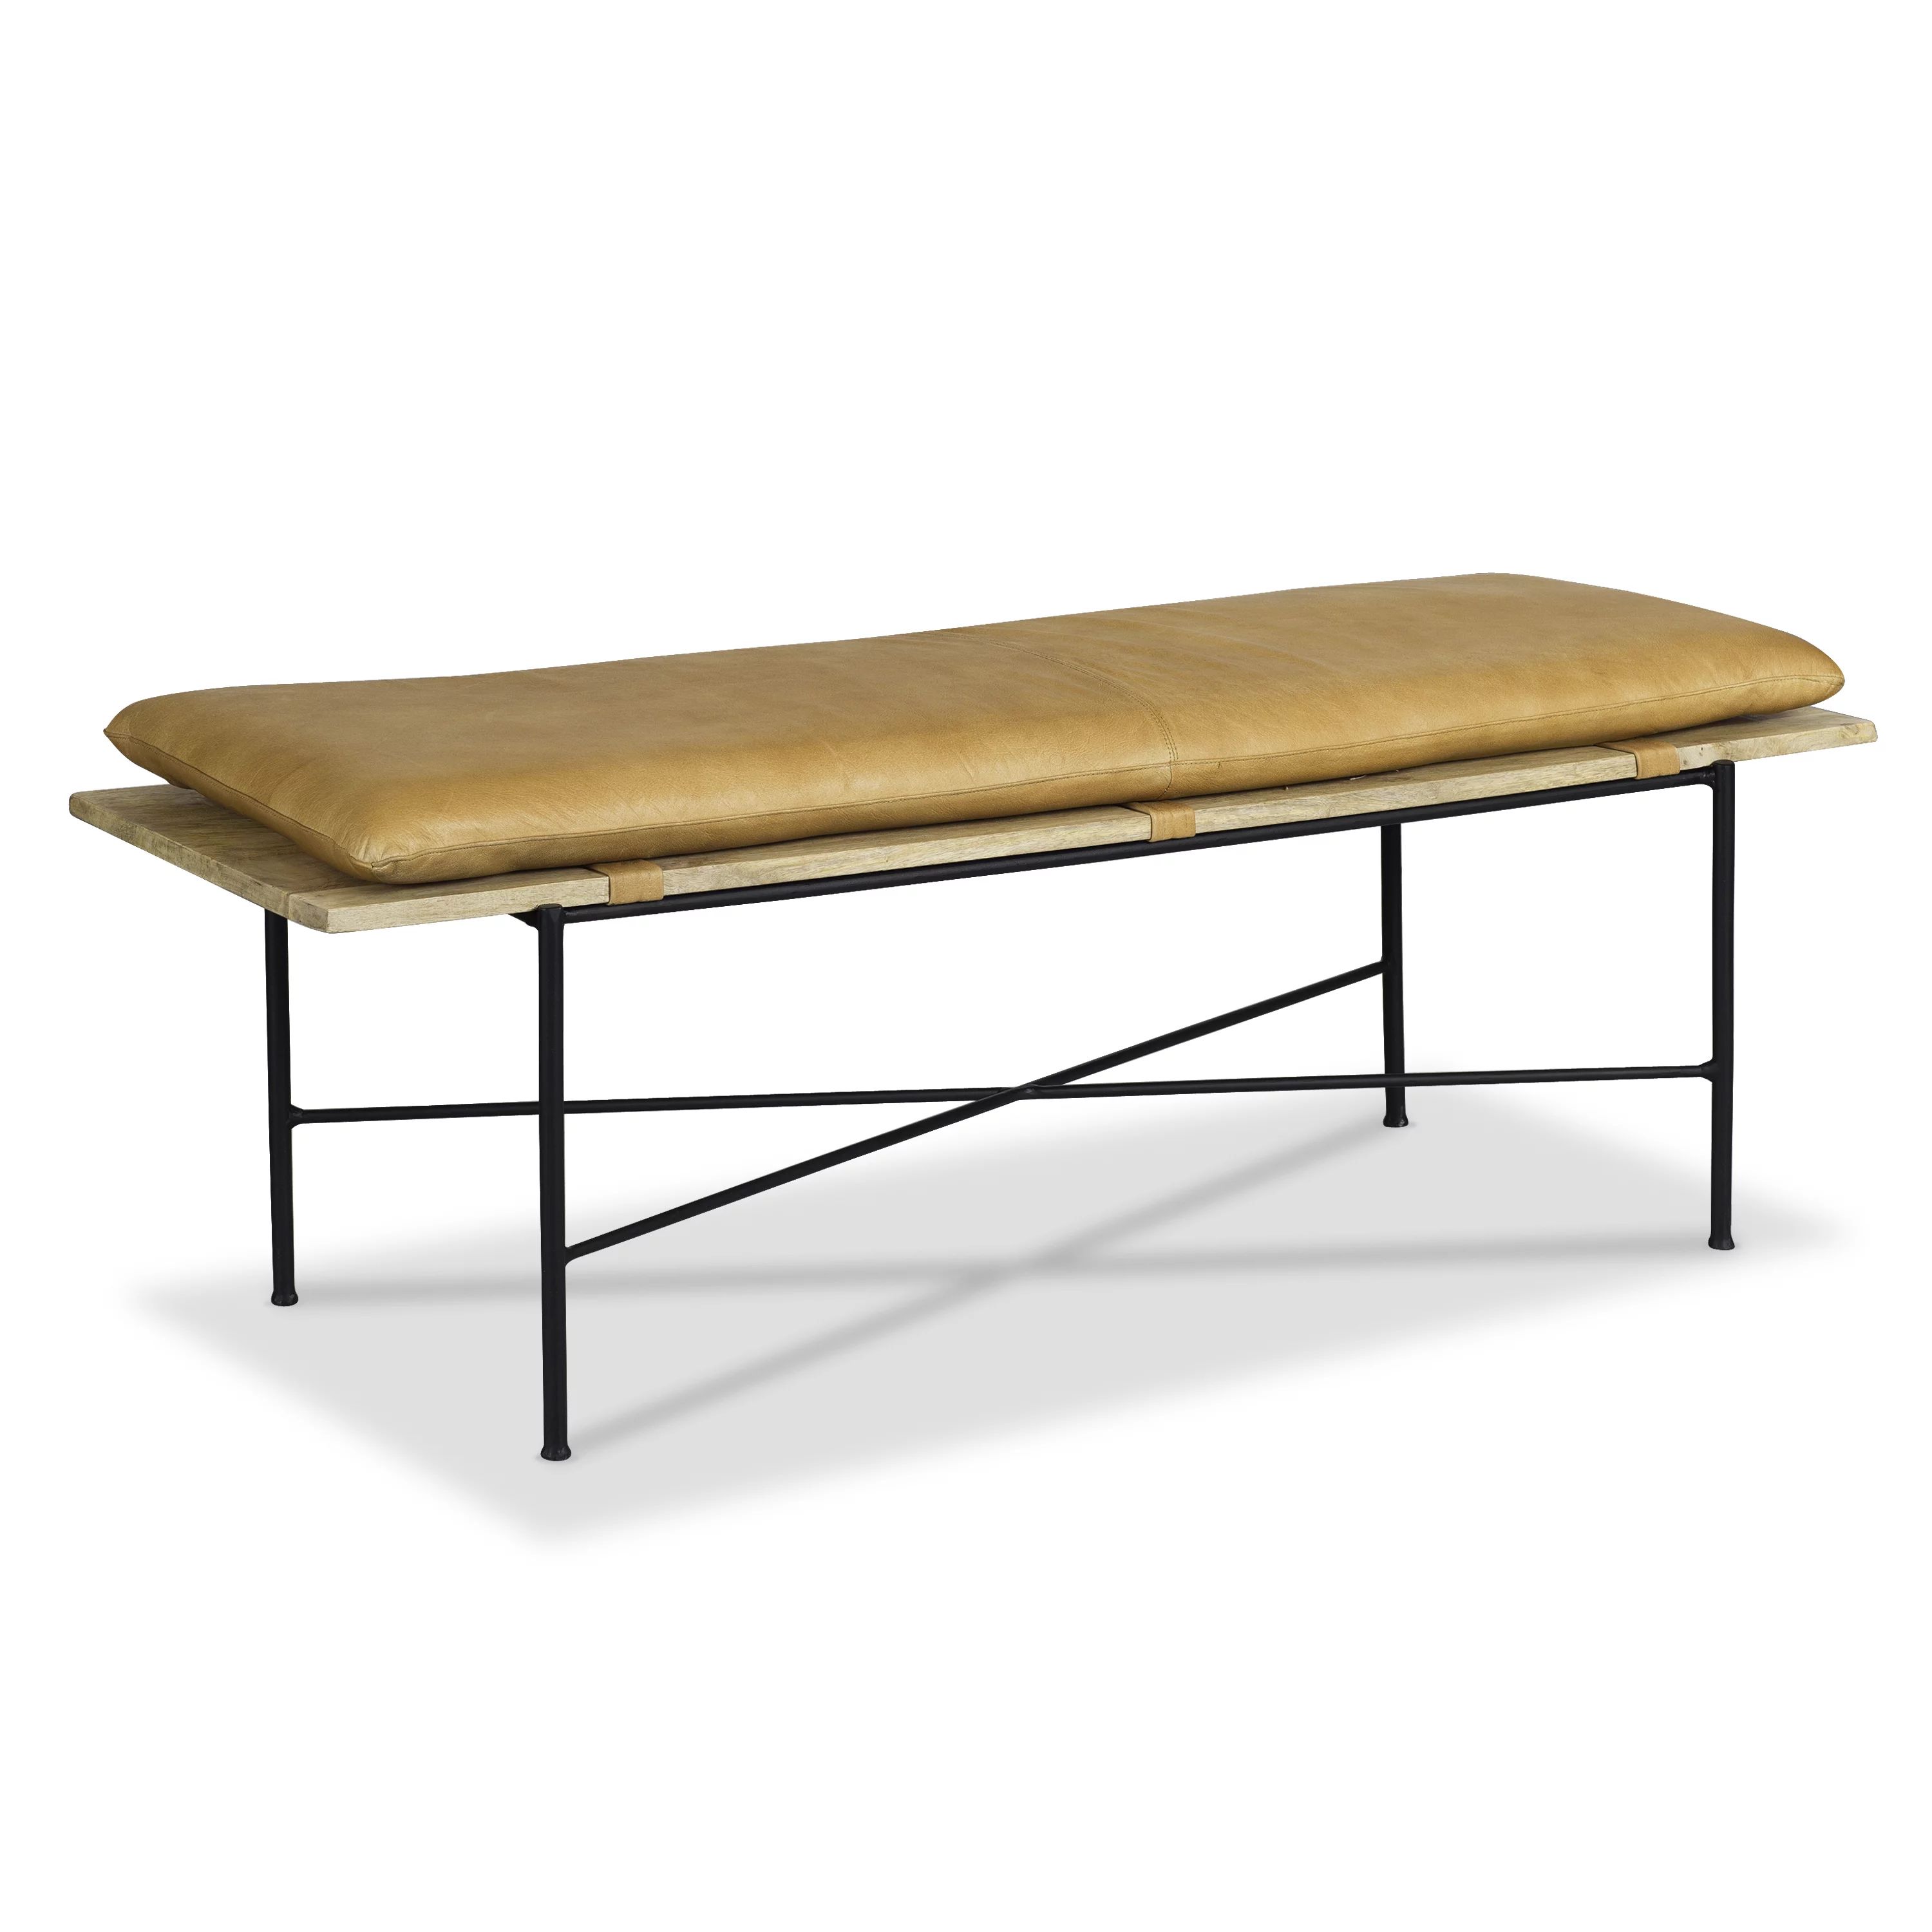 EdgeMod Nulla Upholstered Bench, Saddle Tan | Walmart (US)